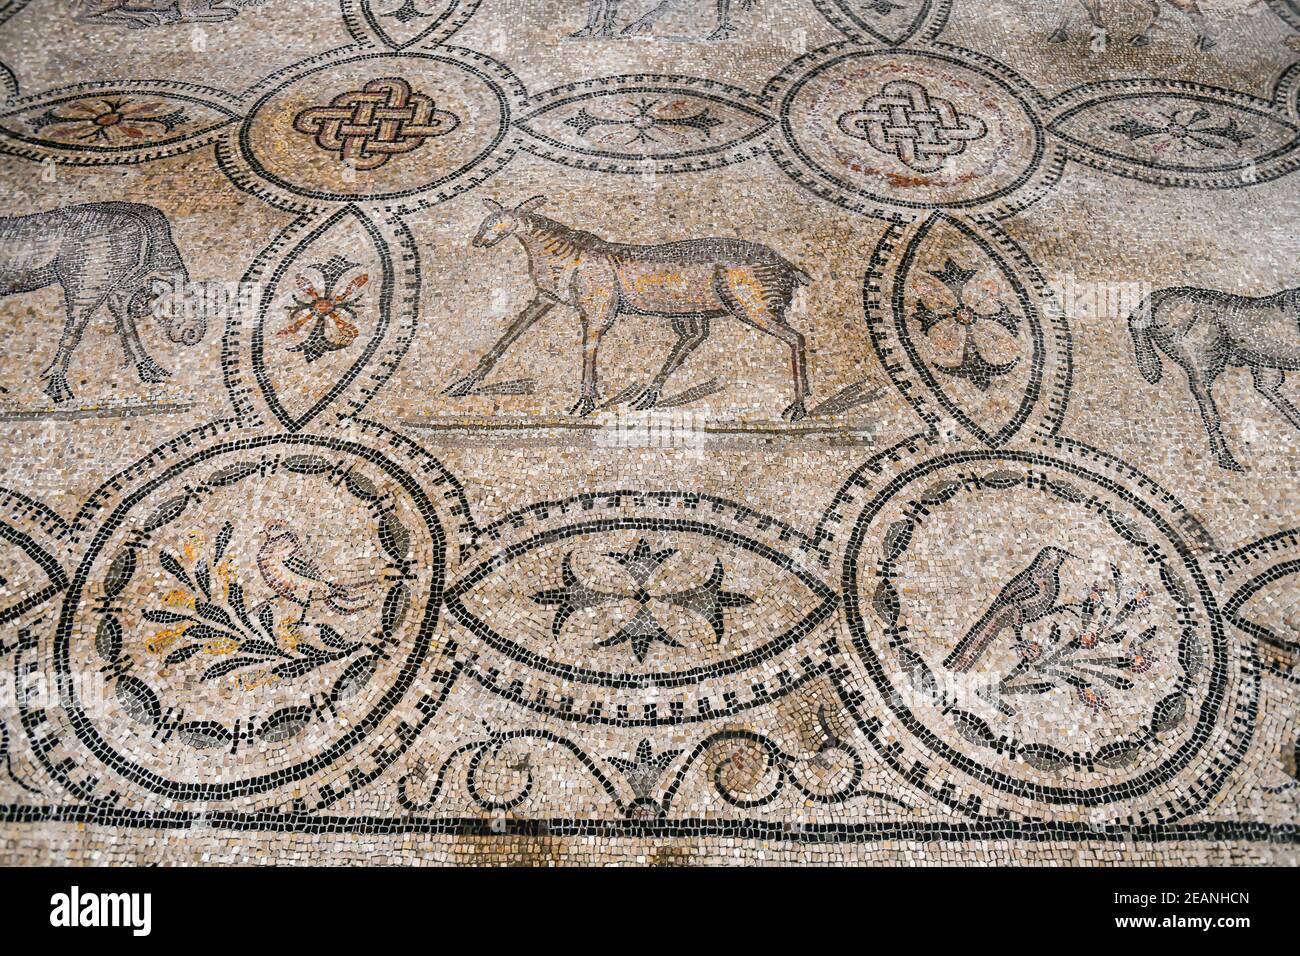 Interno della Cattedrale con il pavimento a mosaico, Patrimonio dell'Umanità dell'UNESCO, Aquileia, Udine, Friuli-Venezia Giulia, Italia, Europa Foto Stock